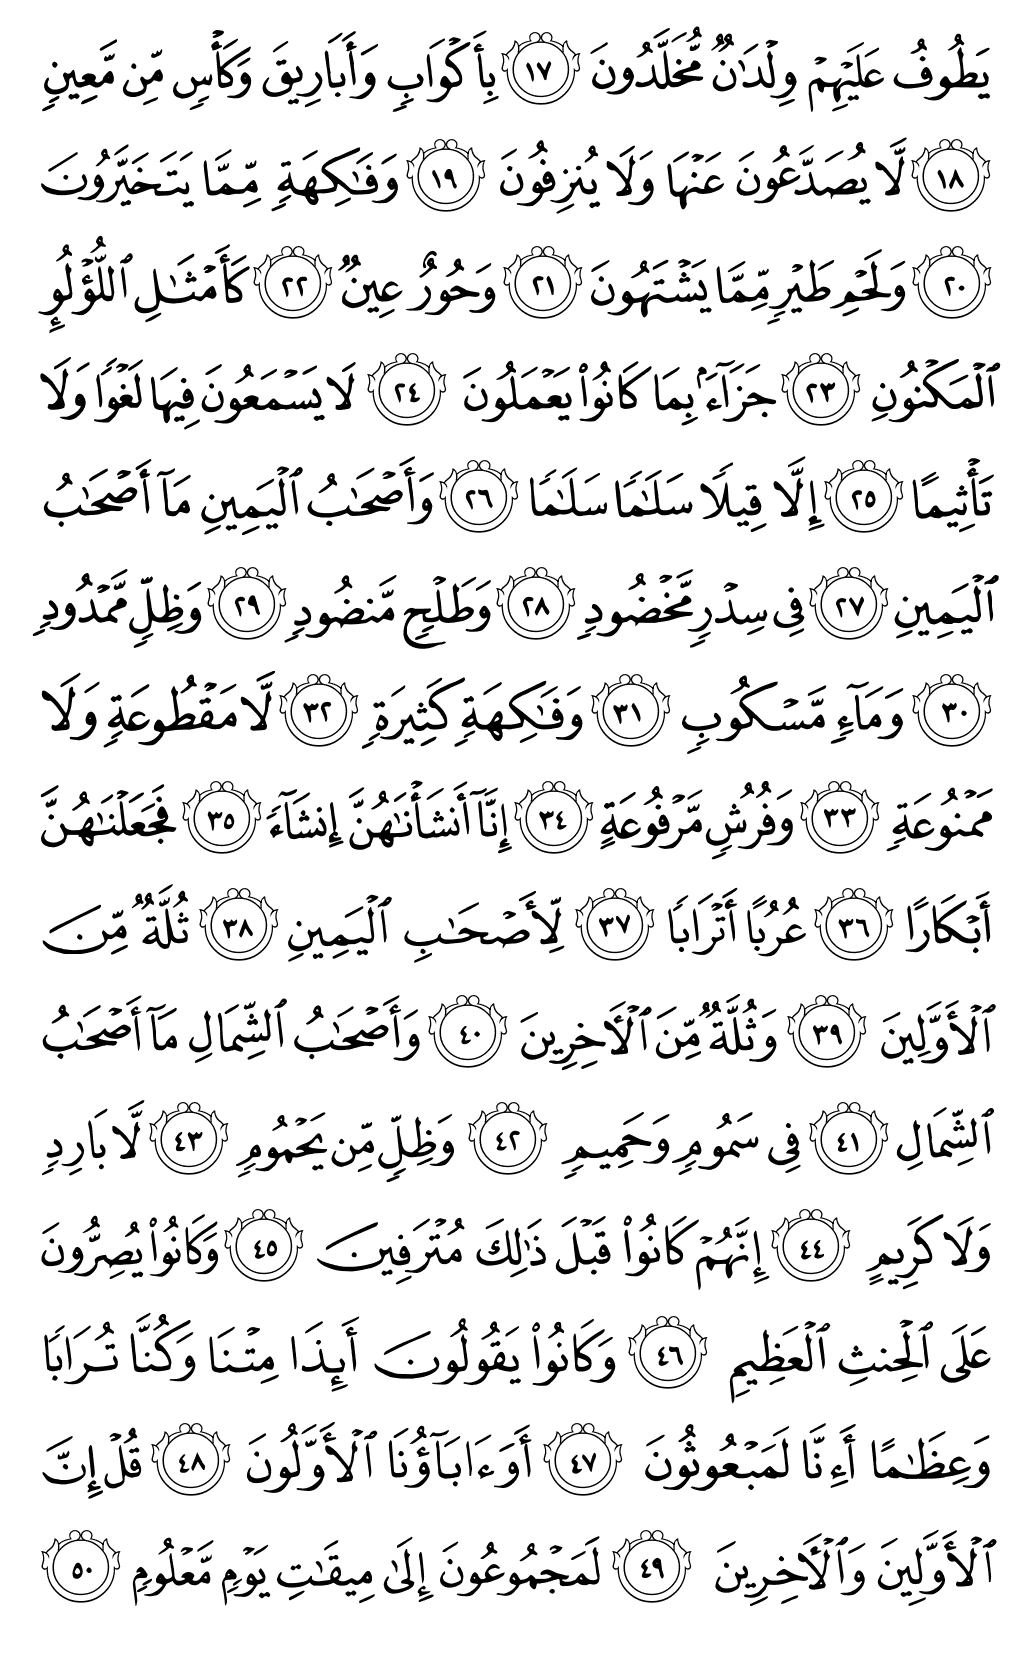 الصفحة رقم 535 من القرآن الكريم